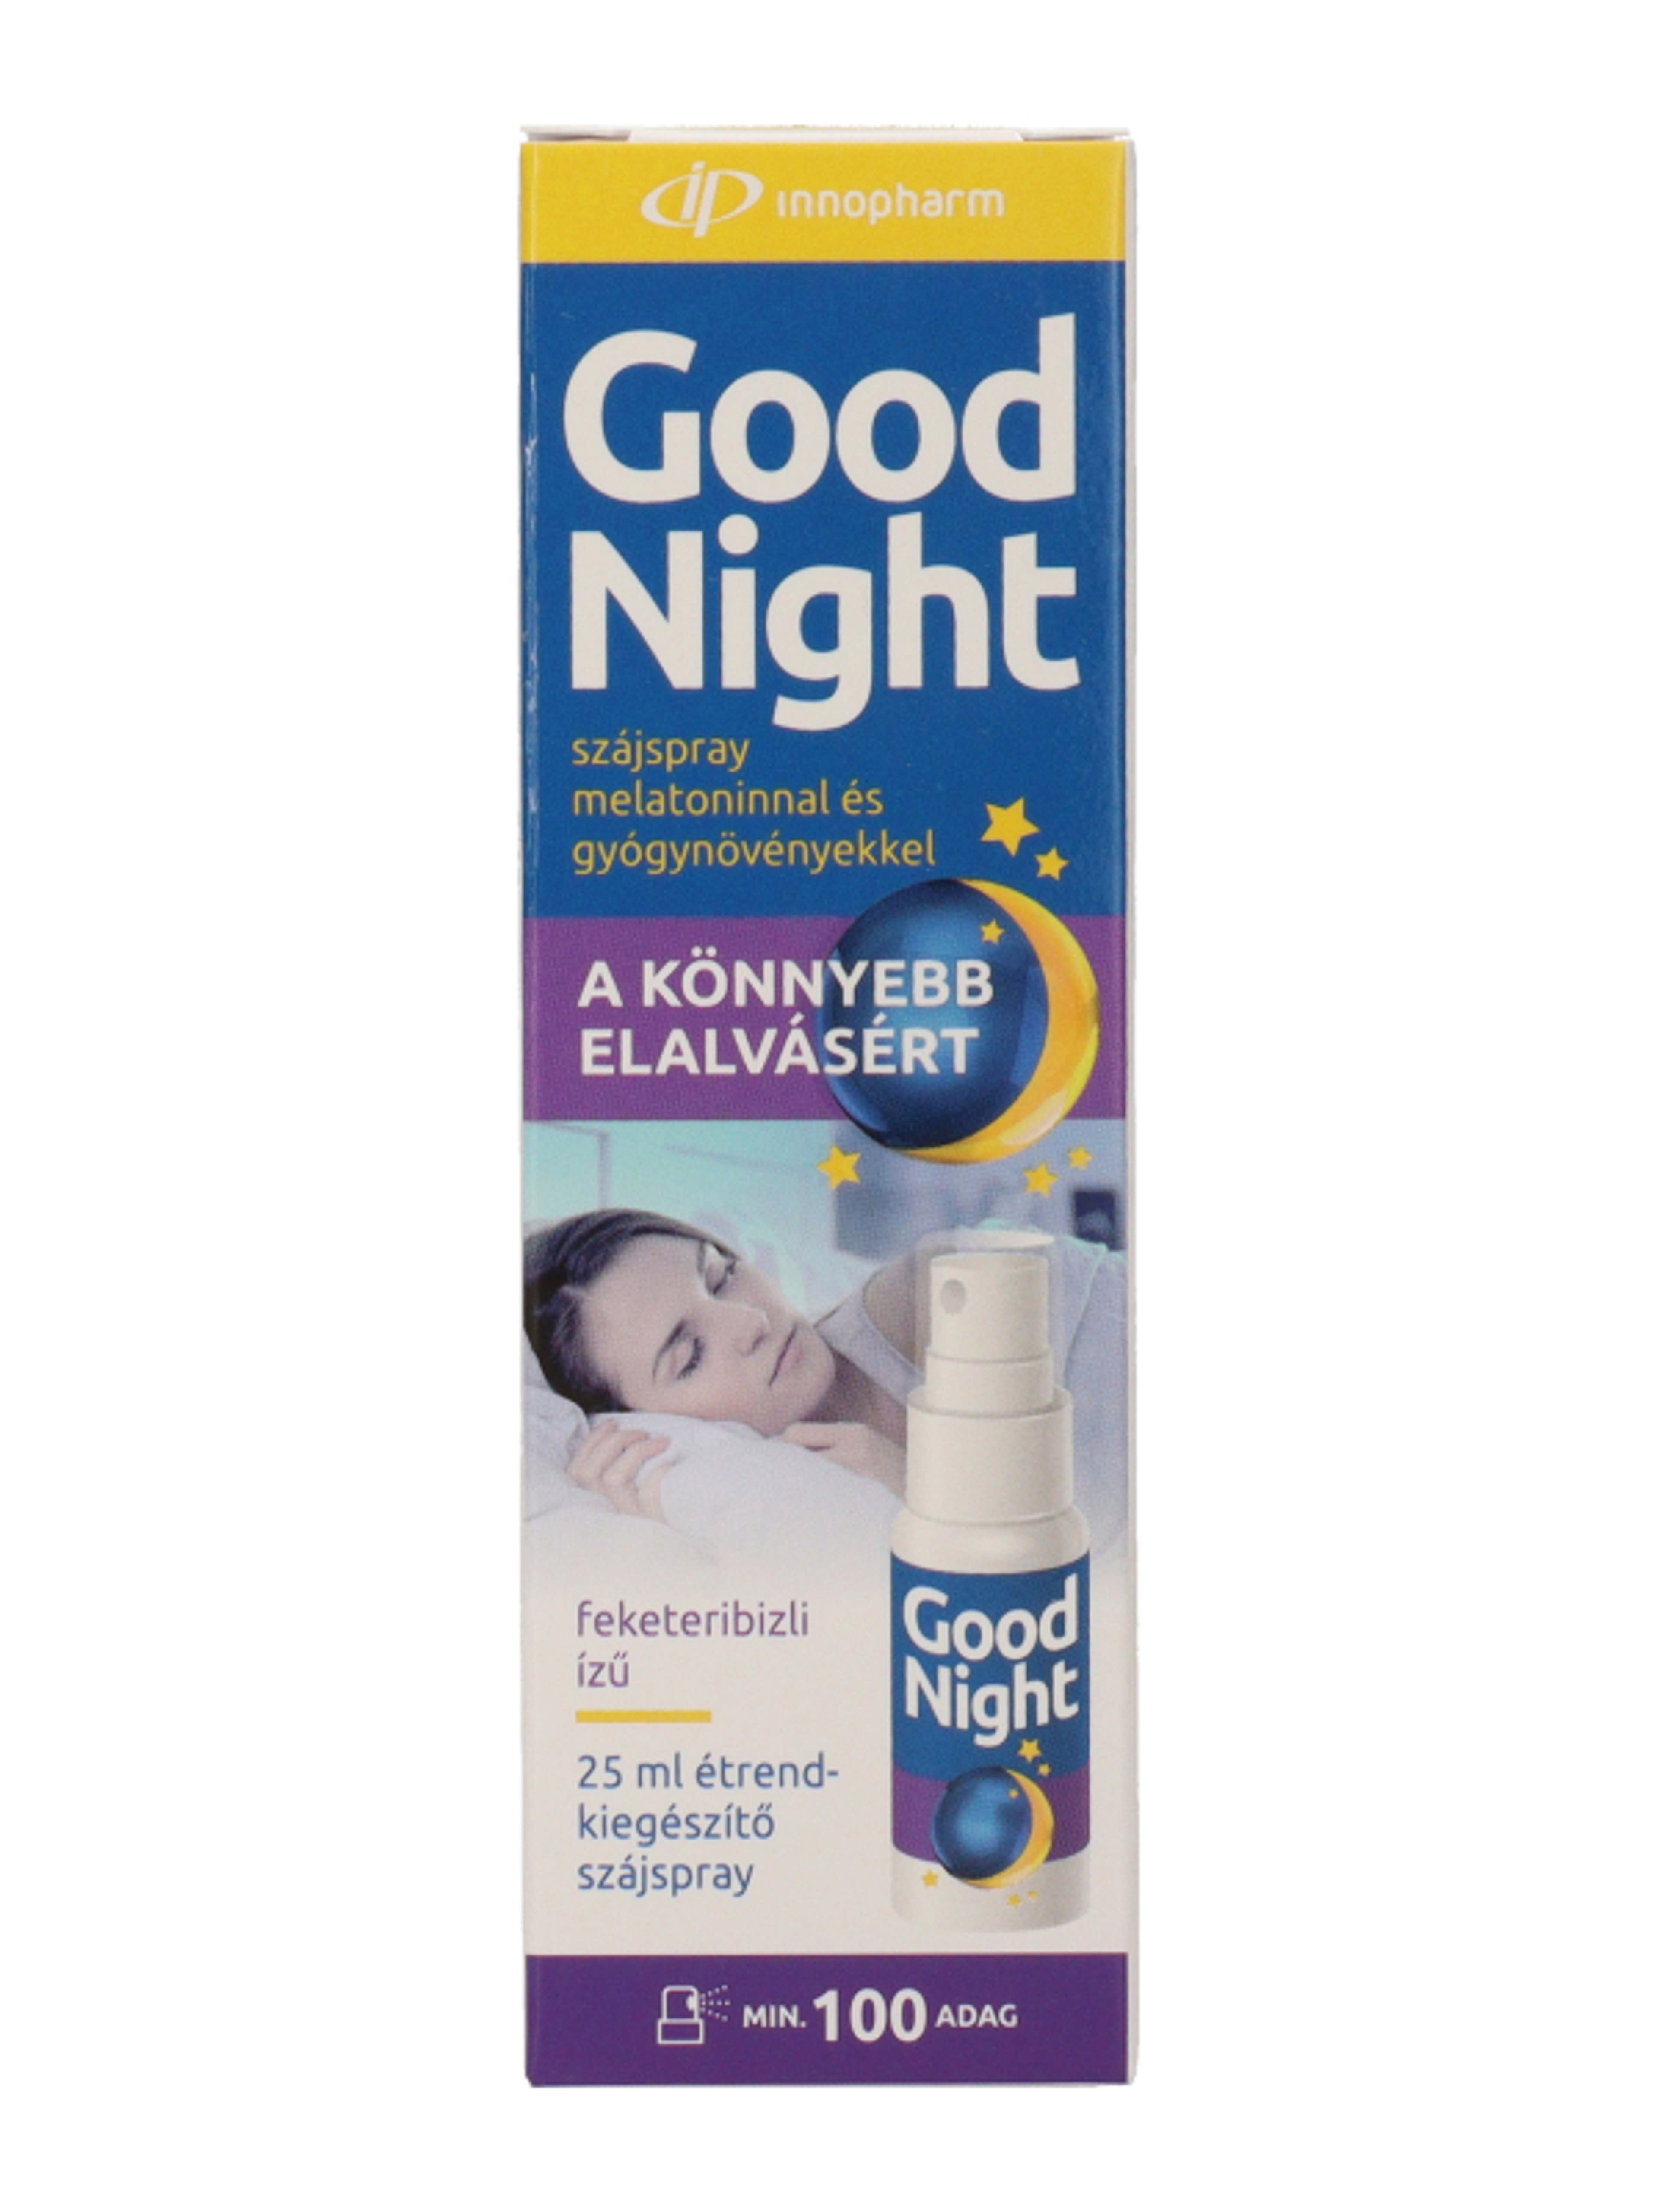 Innopharm Good Night étrend-kiegészítő szájspray melatoninnal és gyógynövényekkel feketeribizli ízű - 25 ml-4